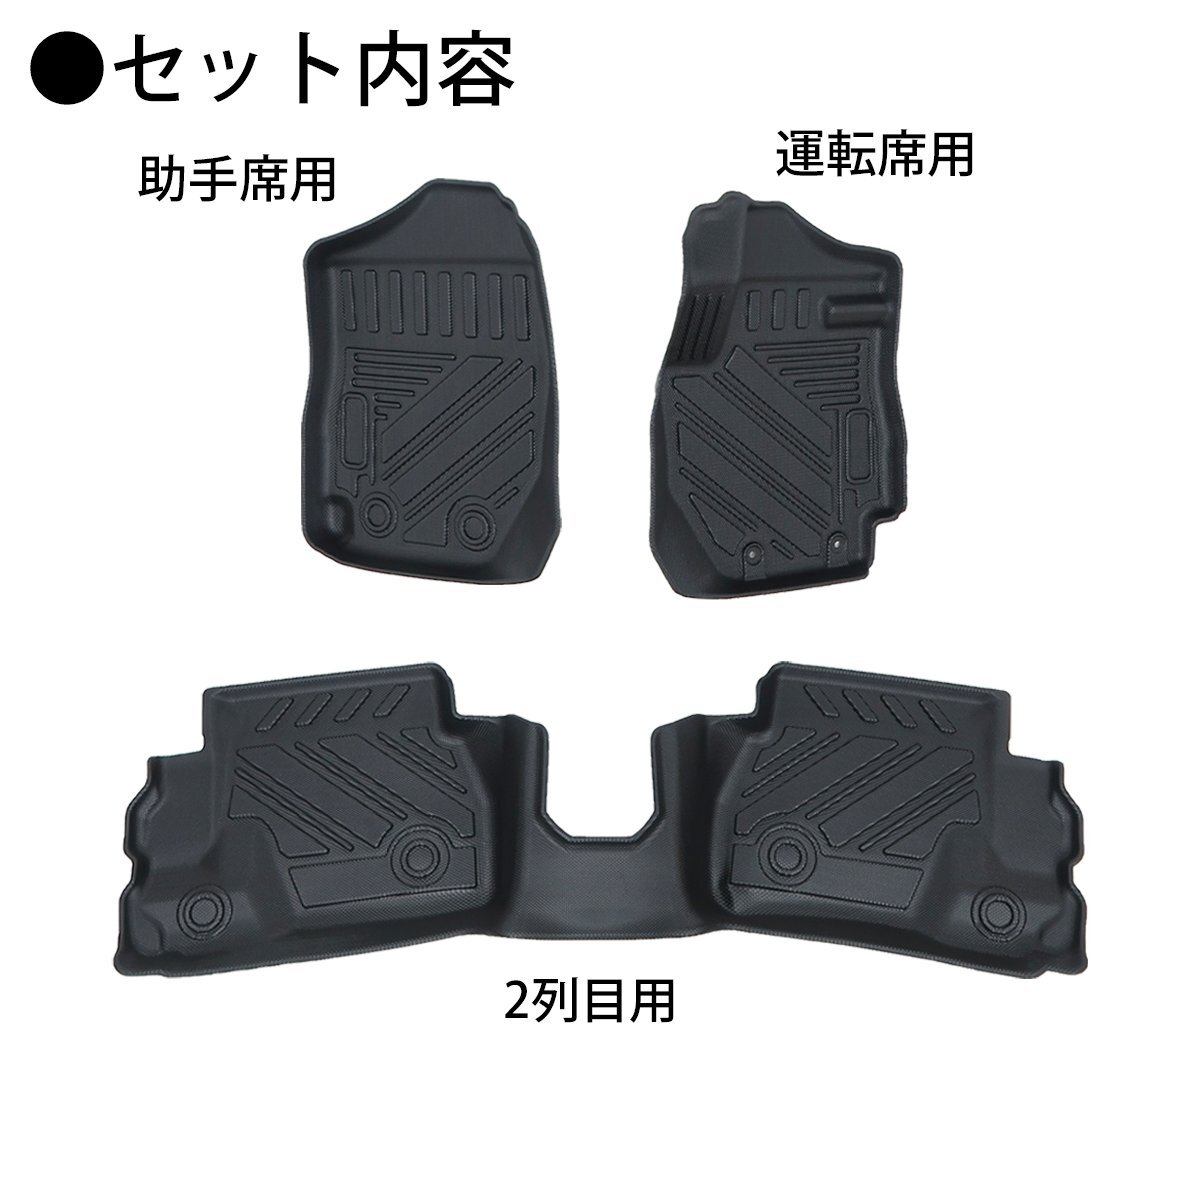 1 иен ~ распродажа Jimny 3D коврик на пол цельный коврик standard body для автомобильный коврик TPE материал цельный формирование смещение предотвращение загрязнения предотвращение HI-28JM